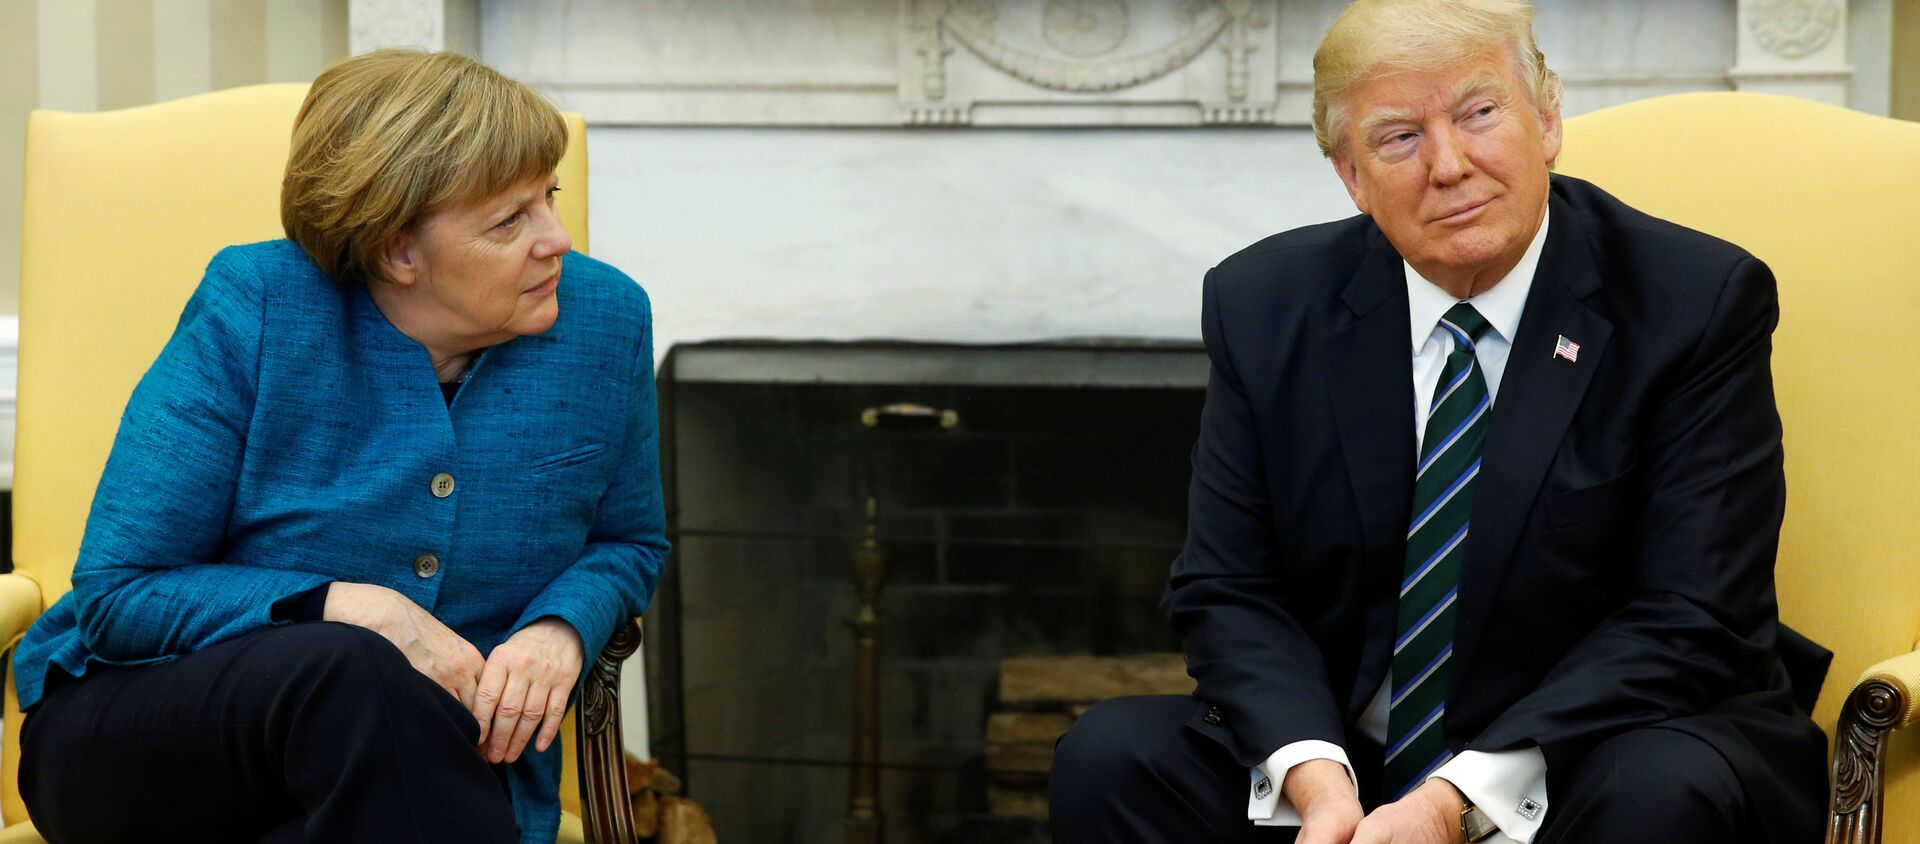 Дональд Трамп и Ангела Меркель  - Sputnik Латвия, 1920, 17.03.2020